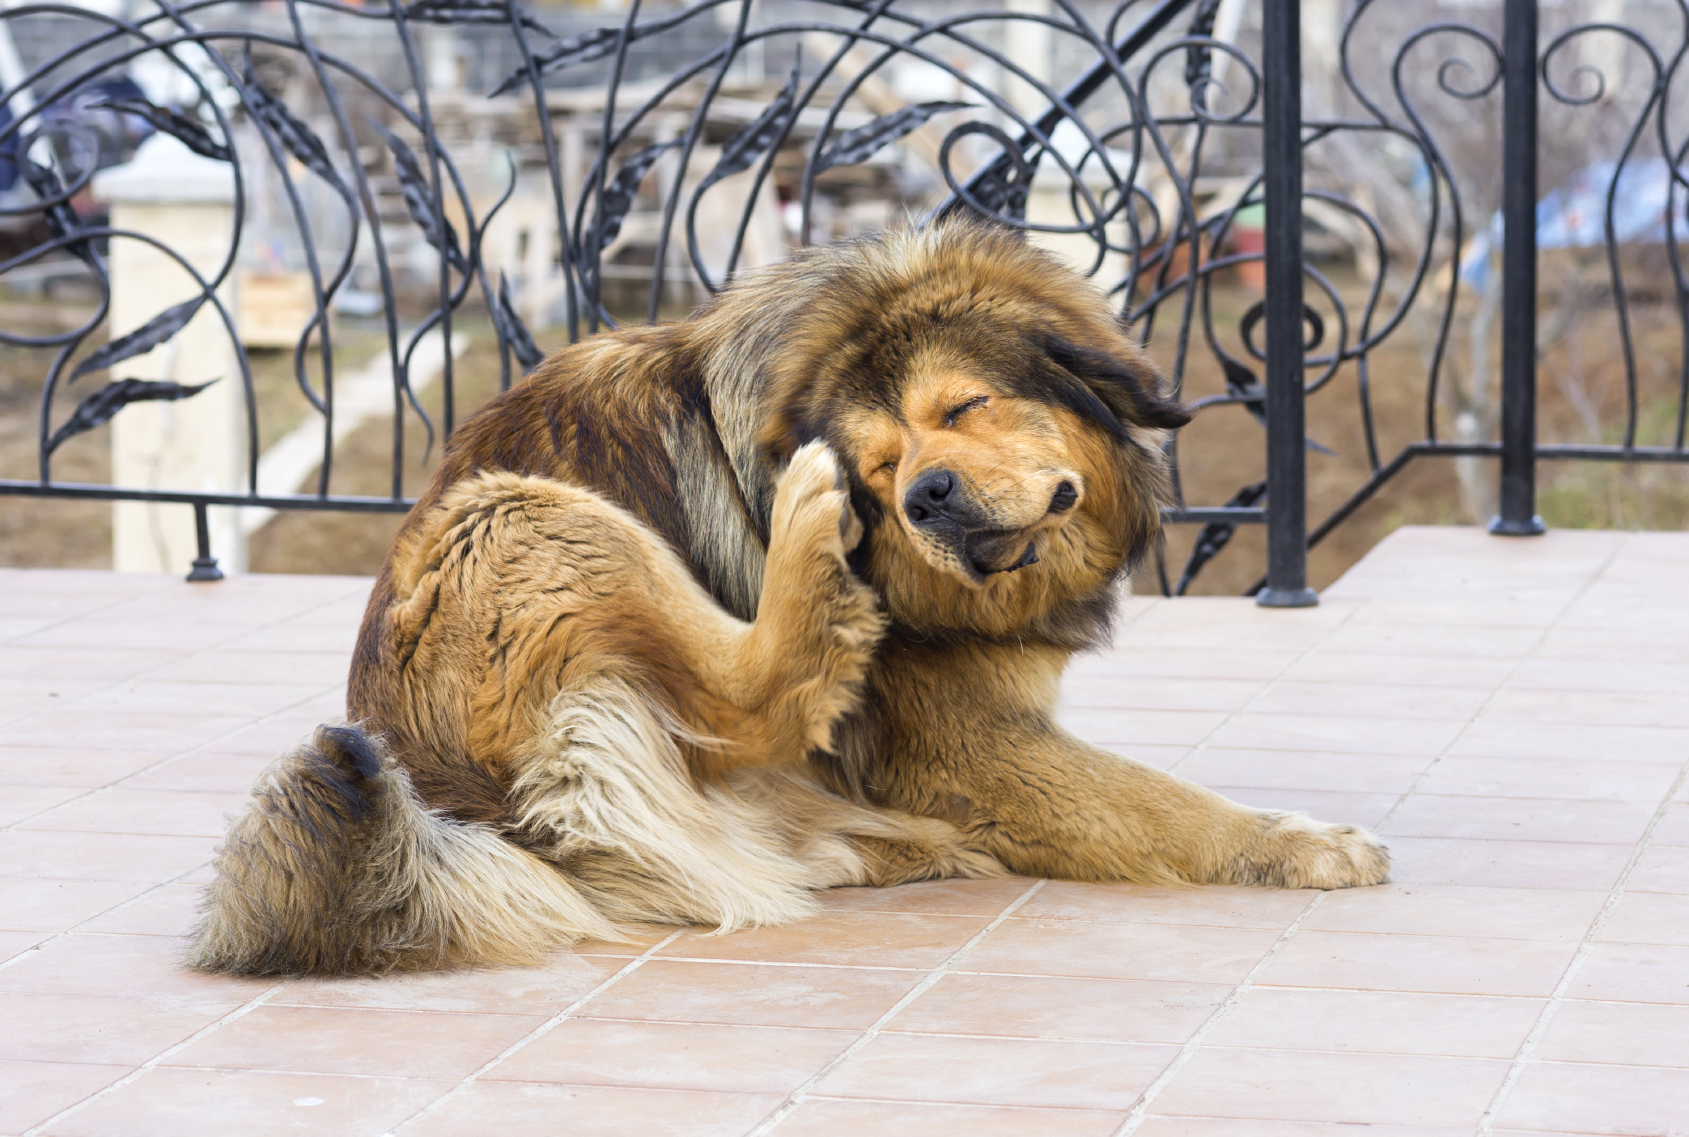 Perros y gatos suelen tener reacciones alérgicas a ciertos alimentos, sustancias o a elementos que se encuentran en el medio ambiente